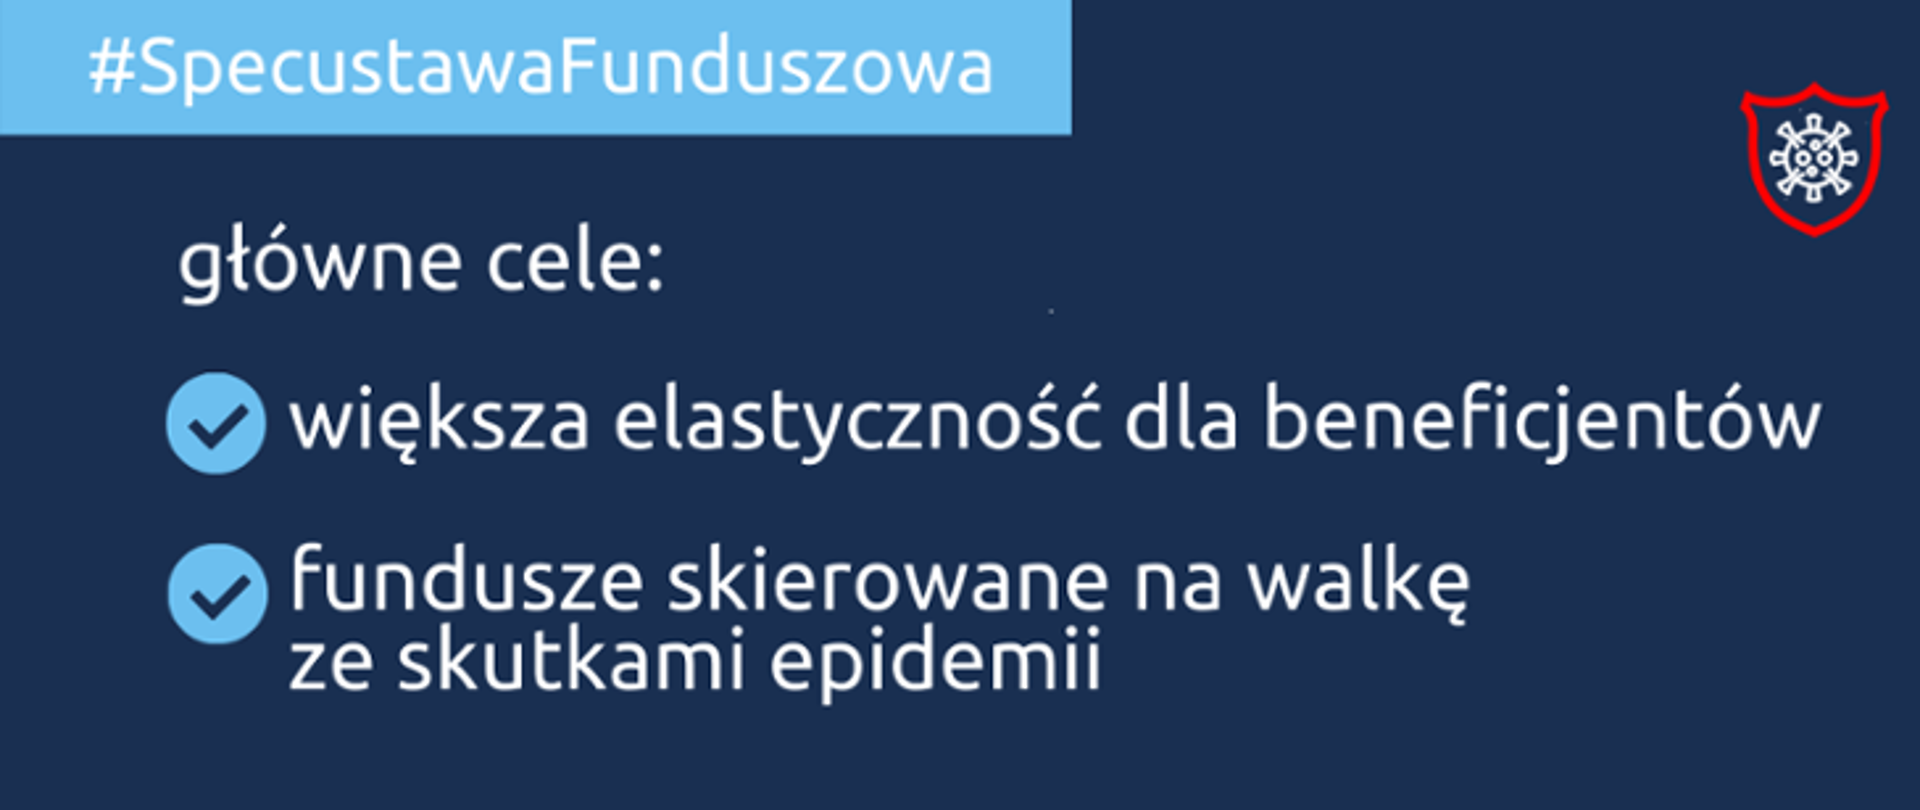 Grafika: na granatowym tle napis: #SpecustawaFunduszowa główne cele:
większa elastyczność dla beneficjentów, fundusze skierowane na walkę ze skutkami epidemii. 